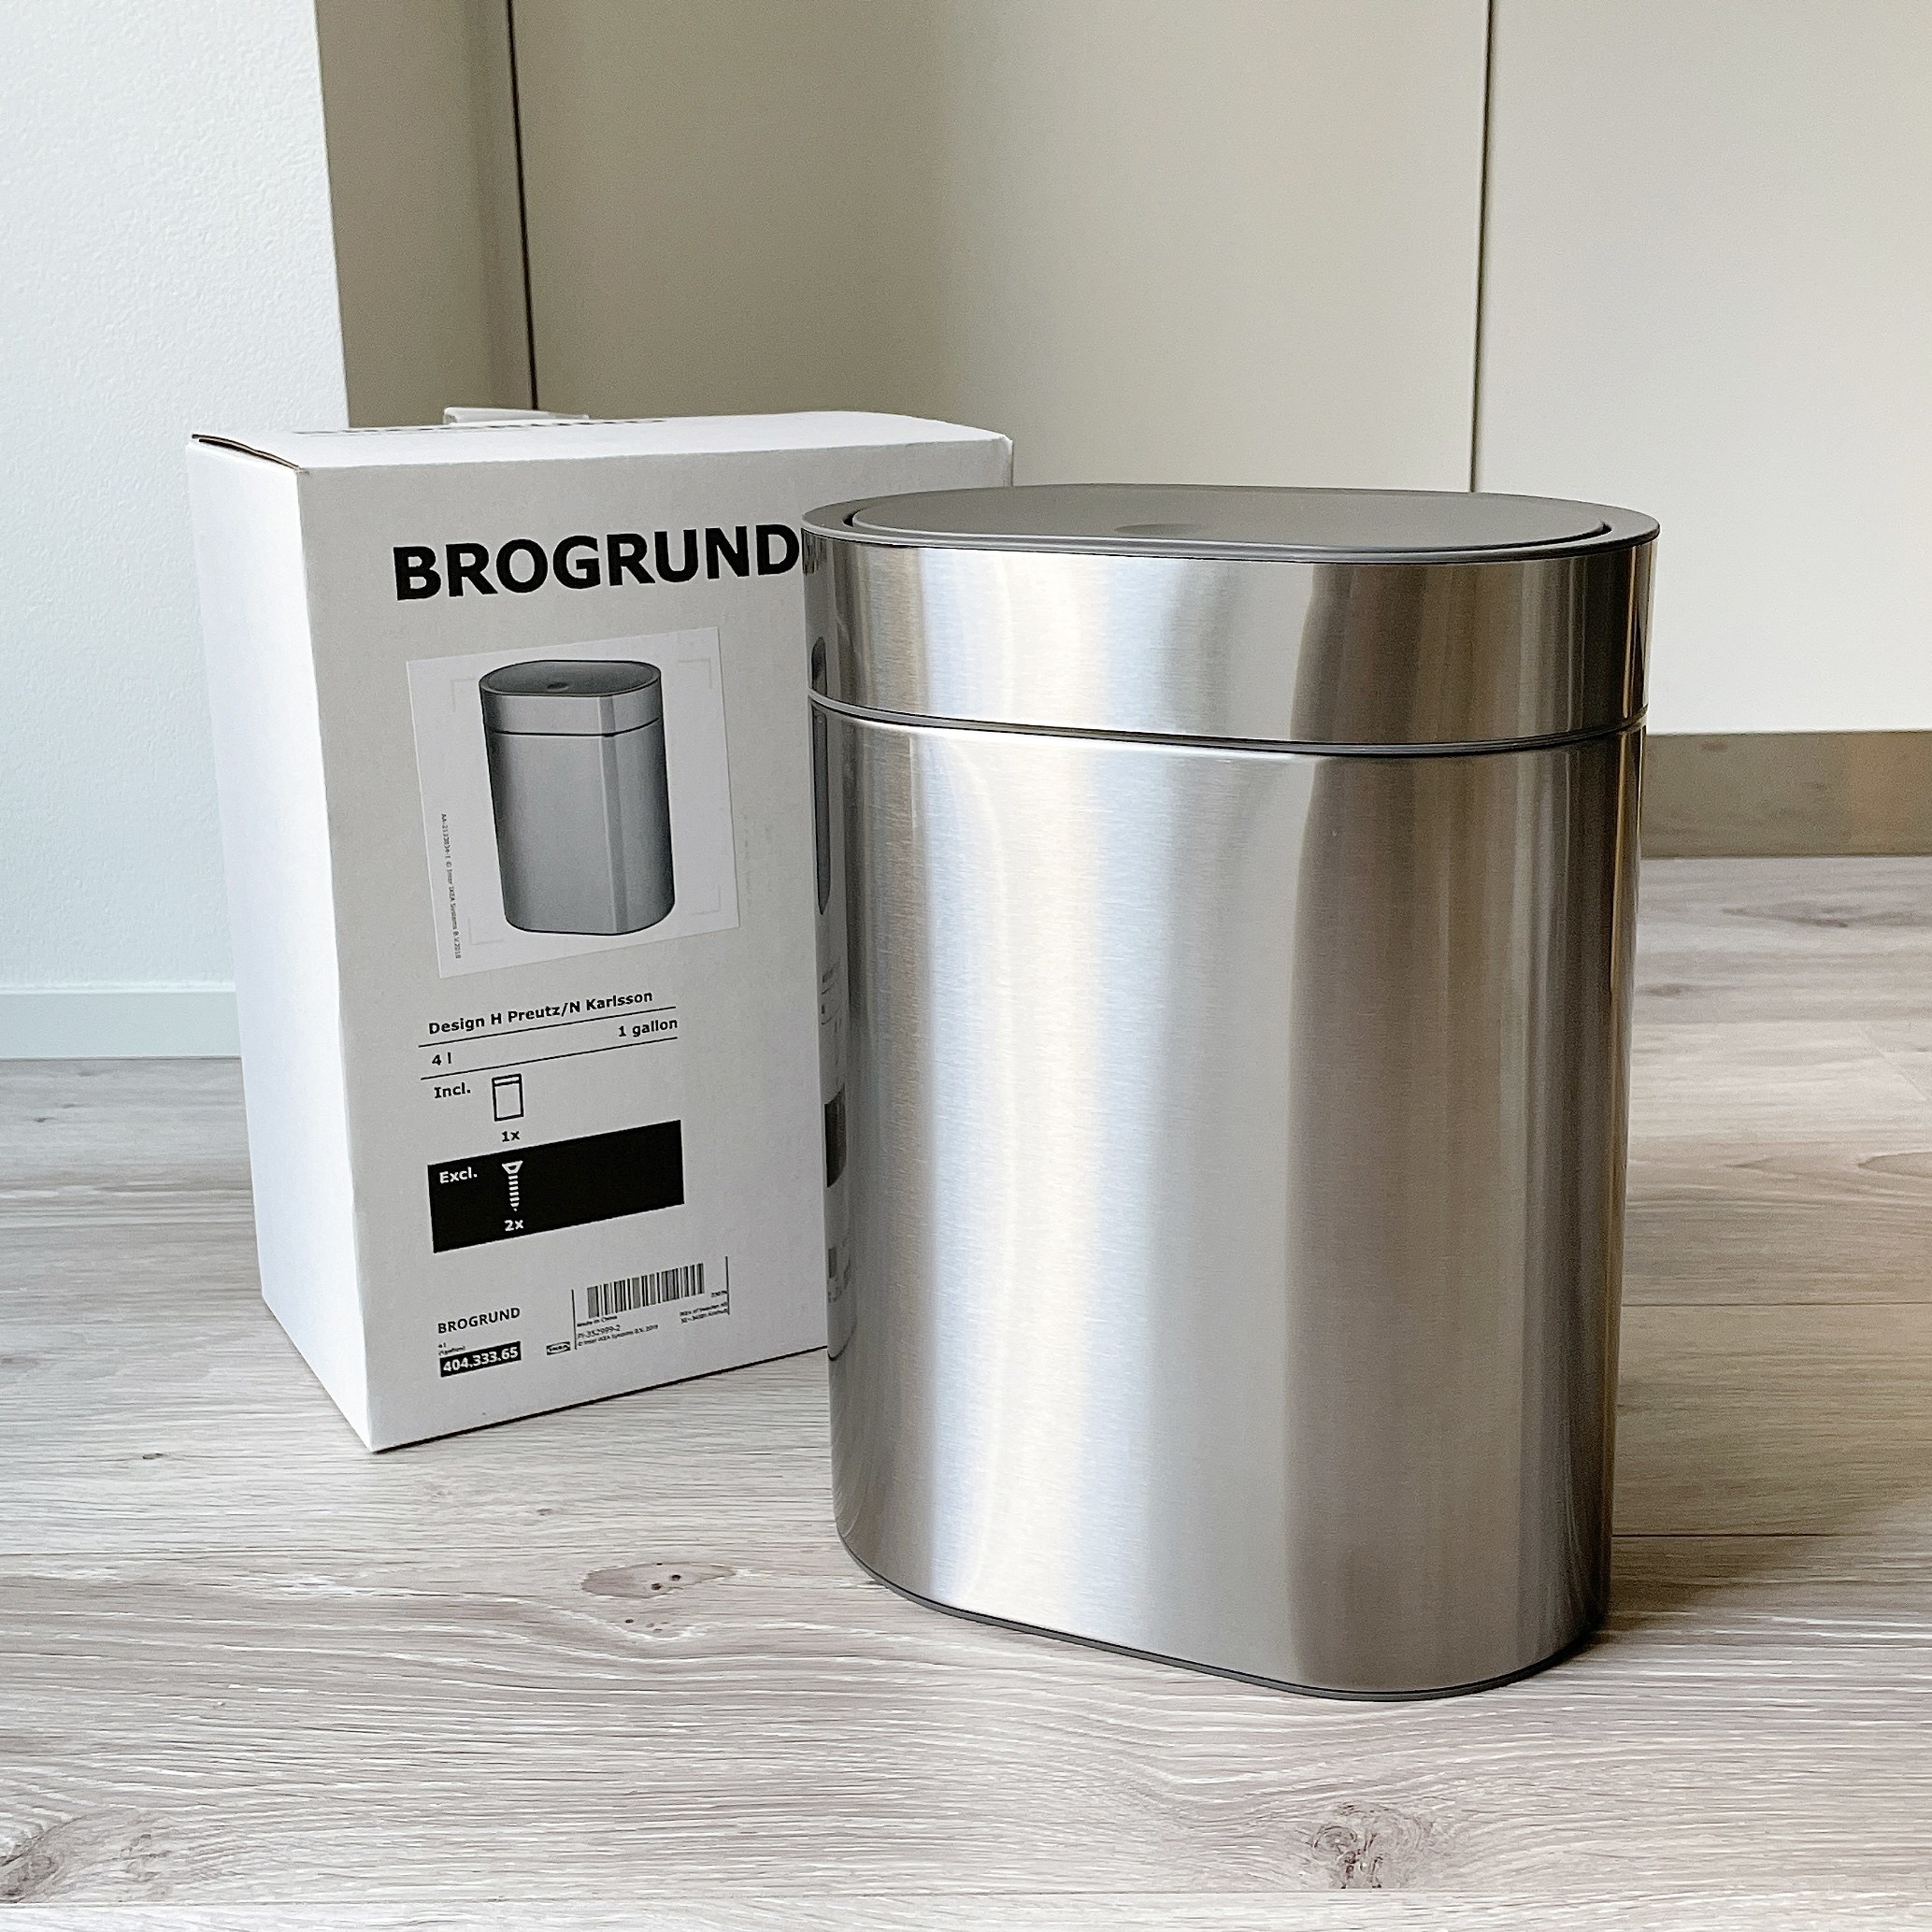 IKEA（イケア）のおすすめのアイテム「BROGRUND ブログルンド タッチ式ゴミ箱」